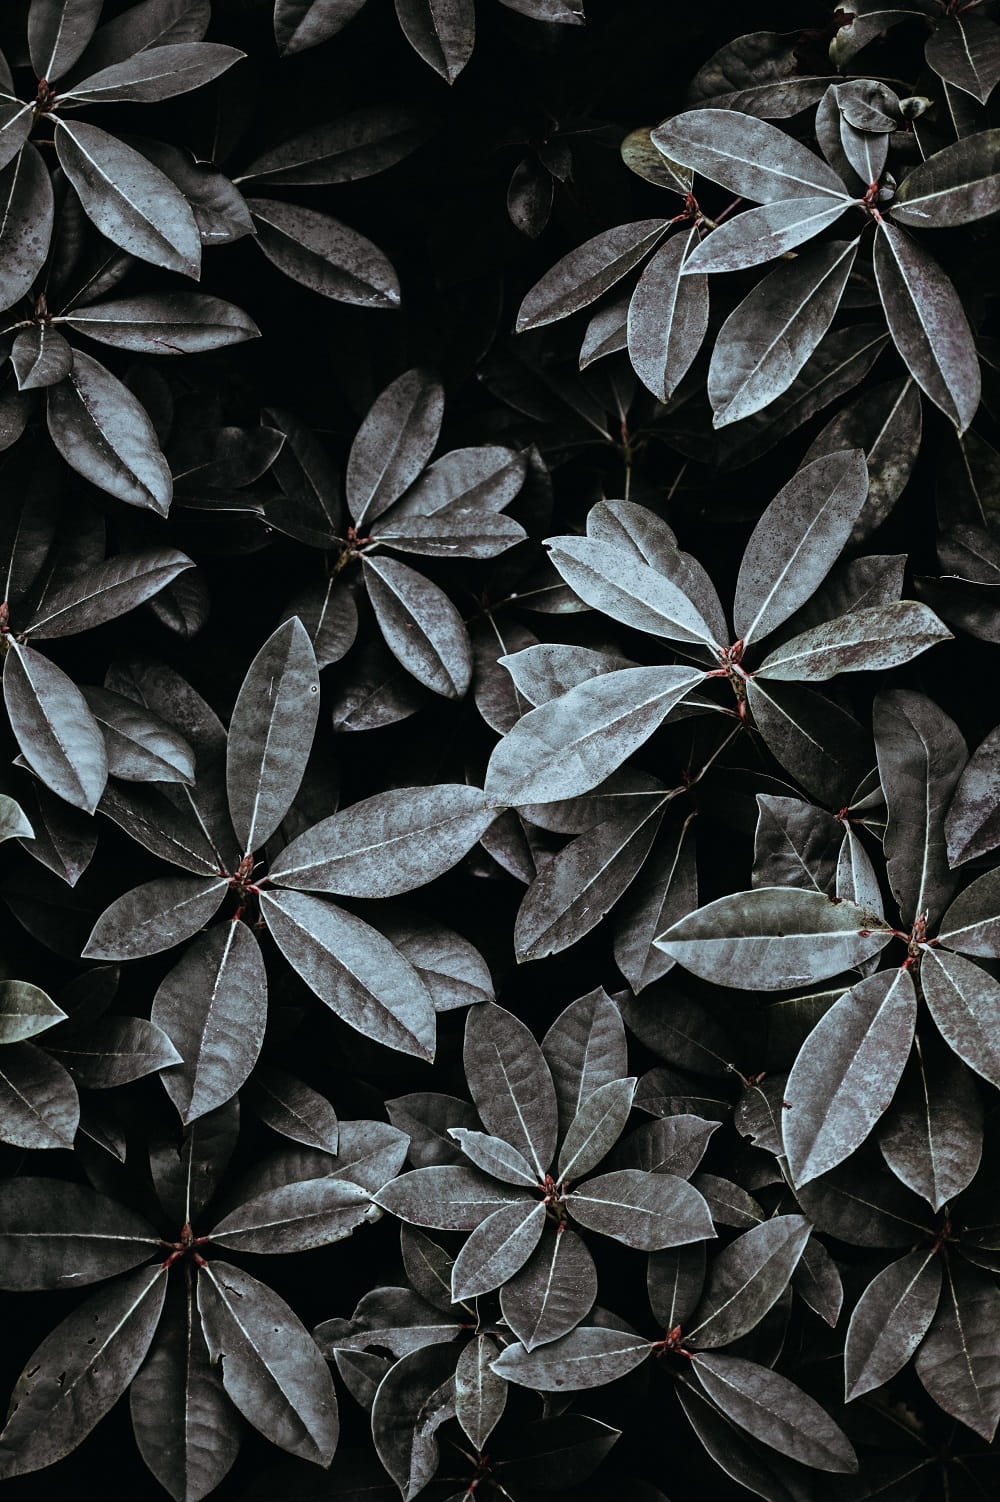 Exbury Gardens, Hampshire, England - Photographer Annie Spratt Botanical Gardens & Tropical Plants Photography